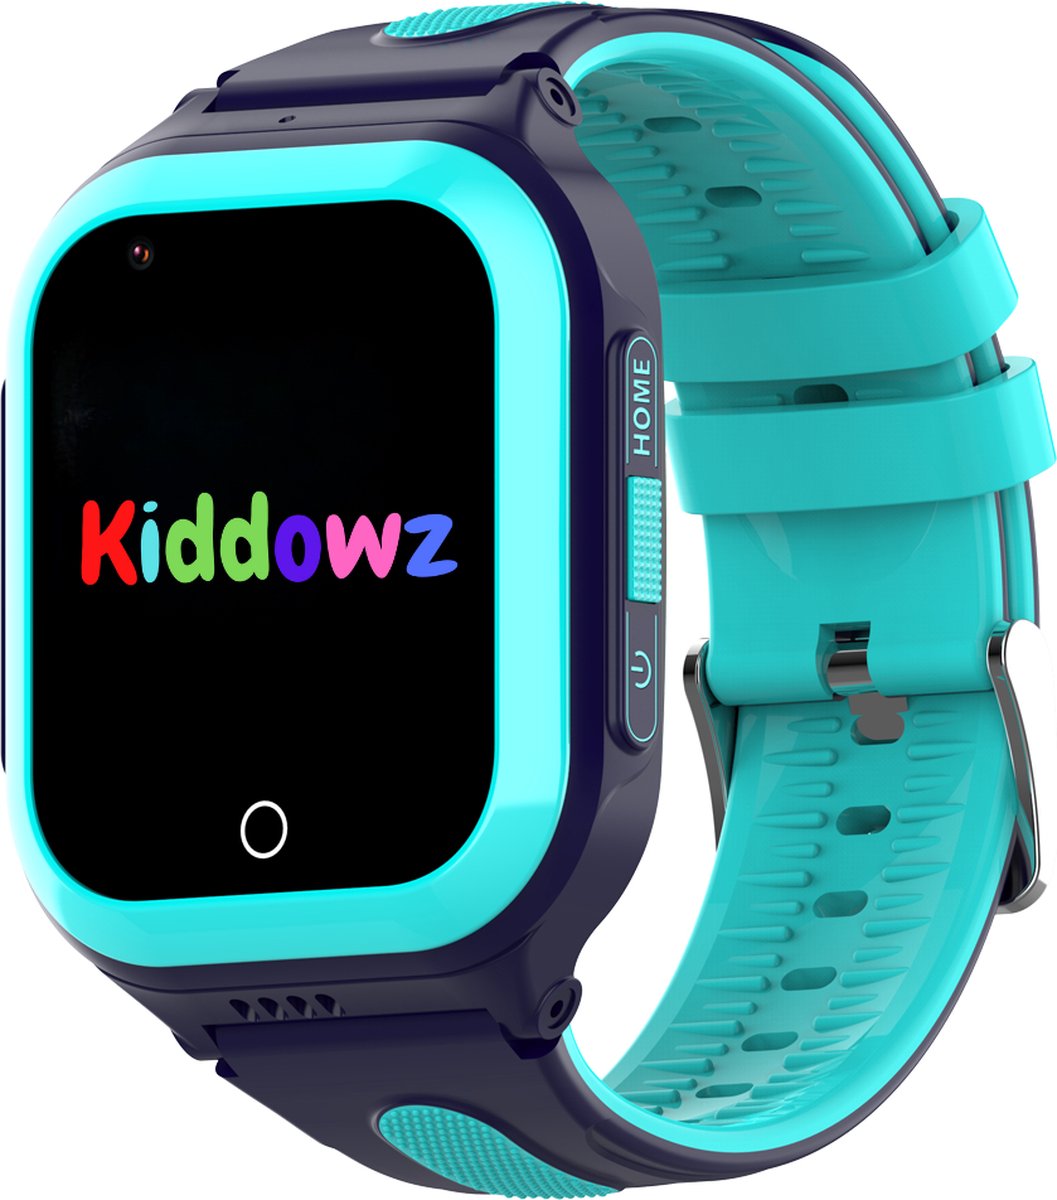 Kiddowz 4G Smartwatch kinderen met GPS Tracker - Kinderhorloge - 5 t/m 12 jaar - met belfunctie, videobellen, stappenteller en meer - Blauw - Groen - Kiddowz